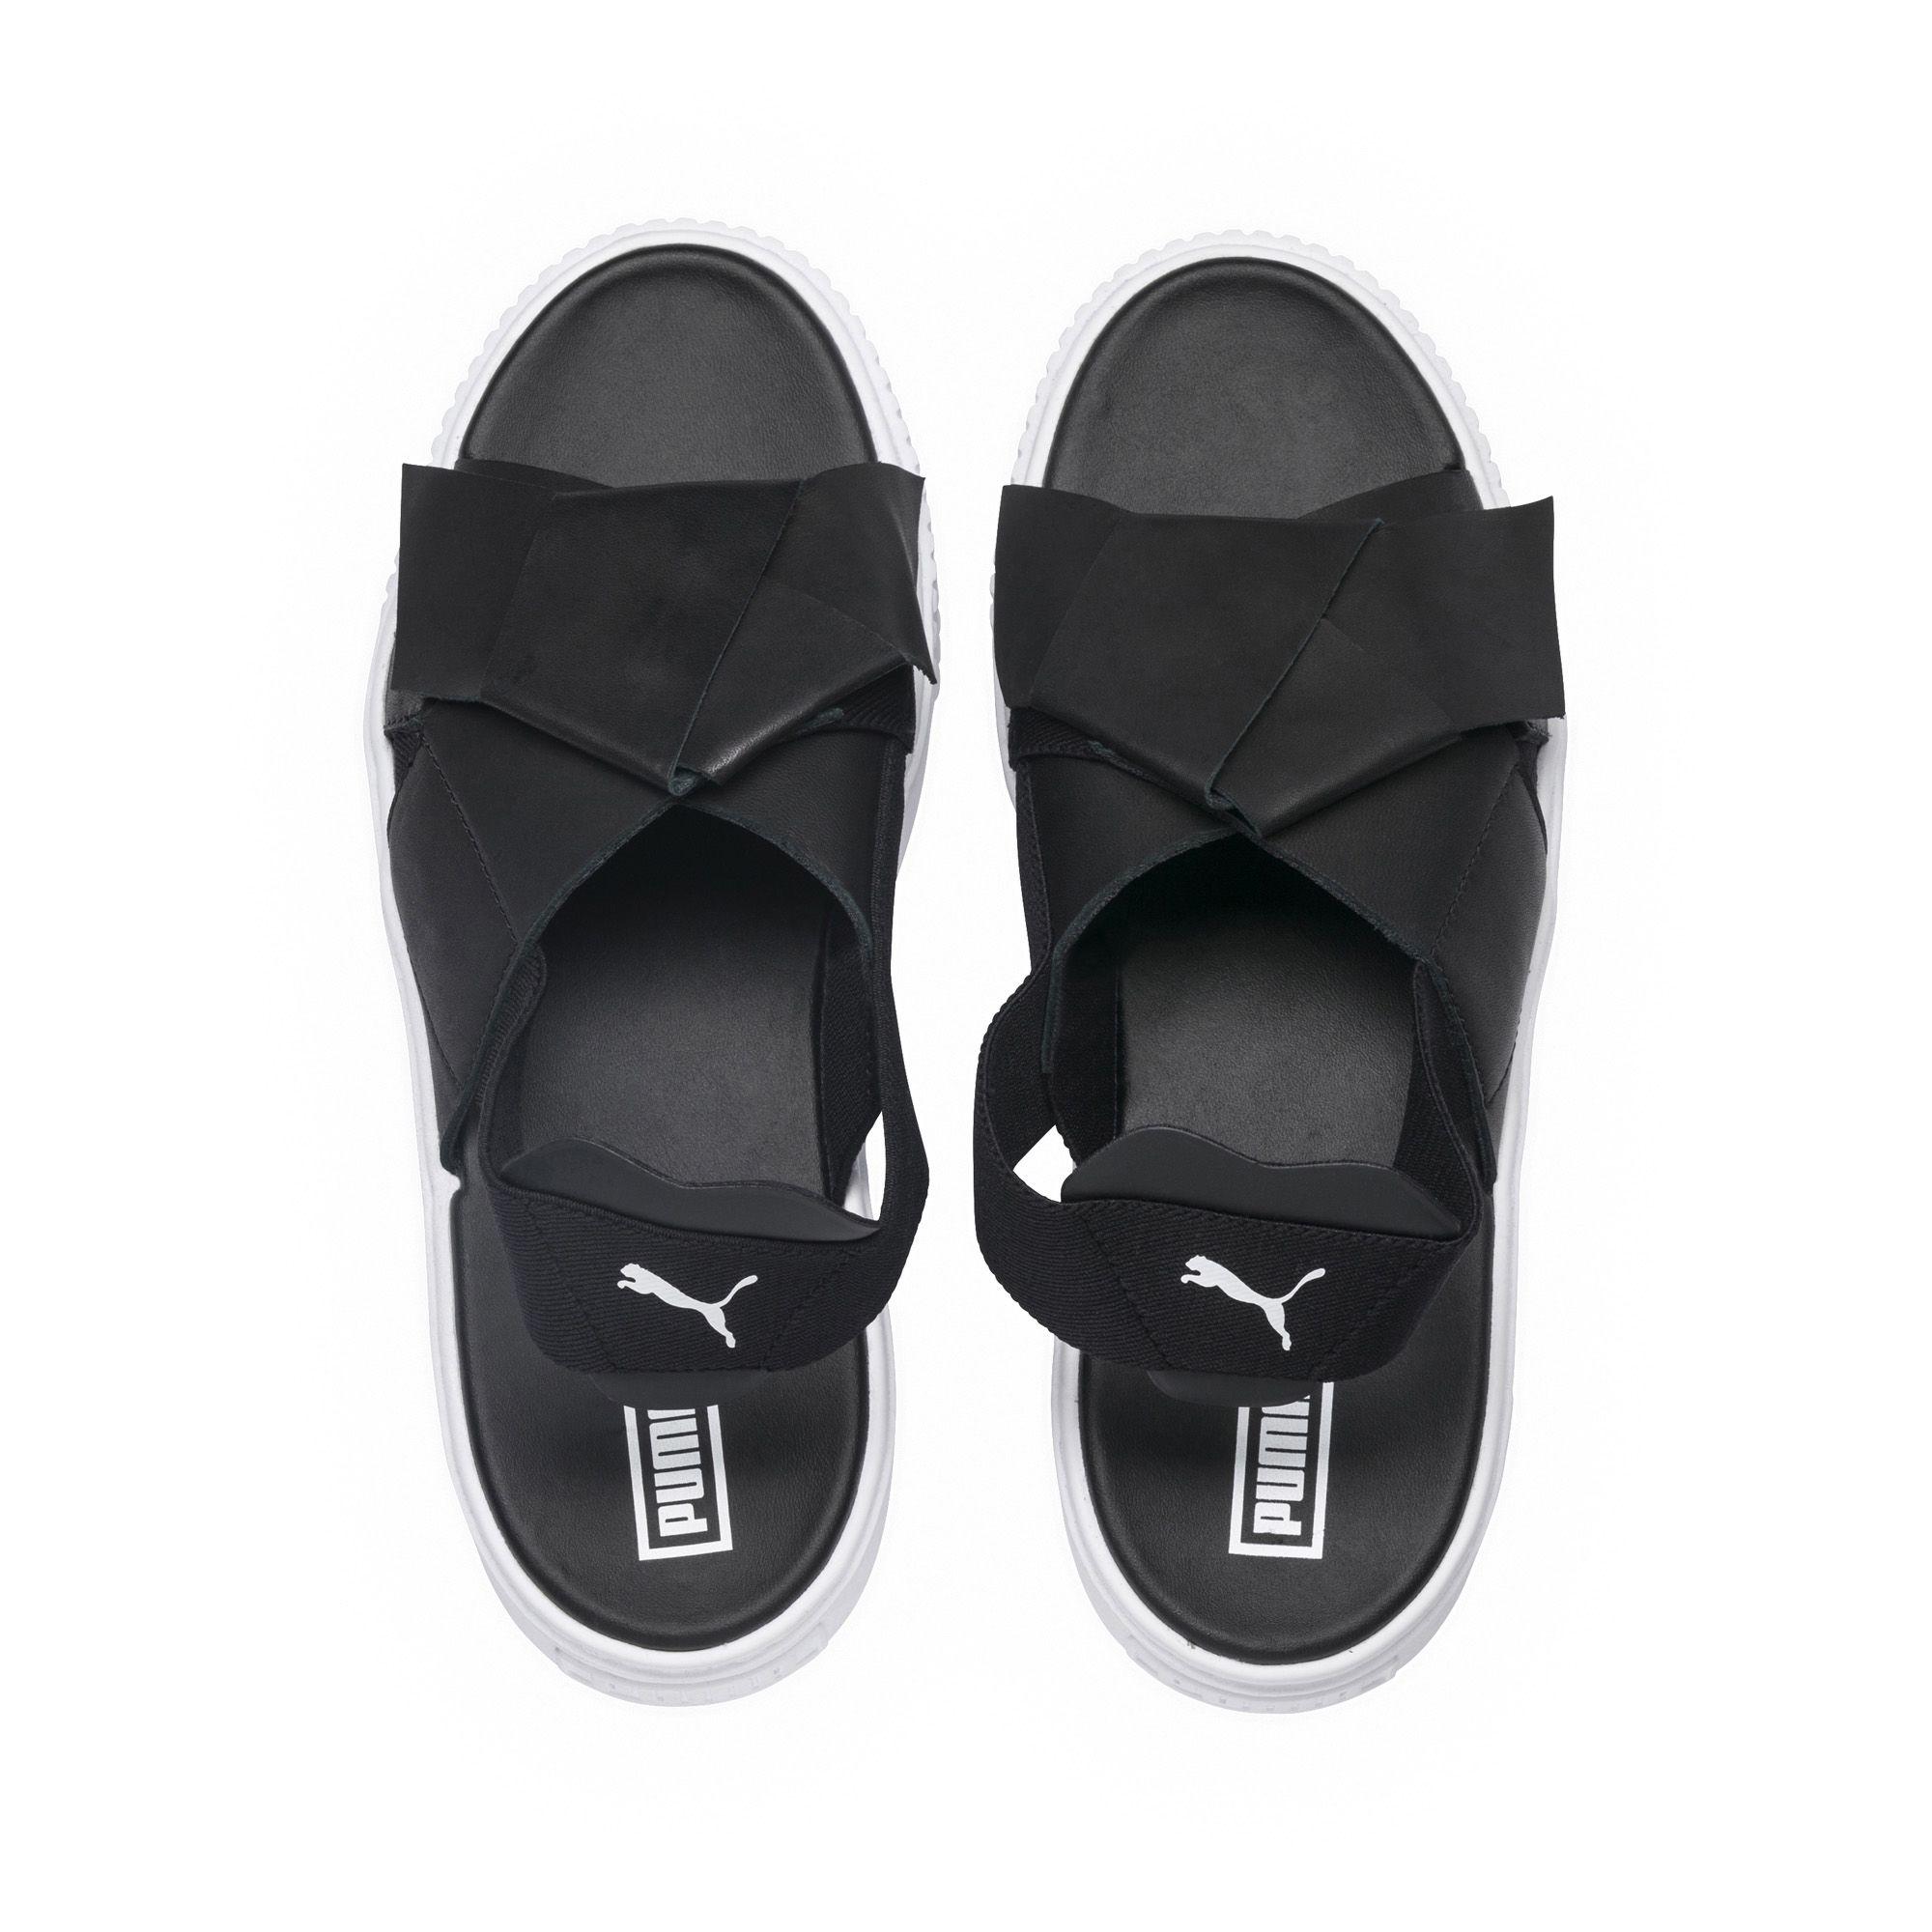 puma platform sandals black